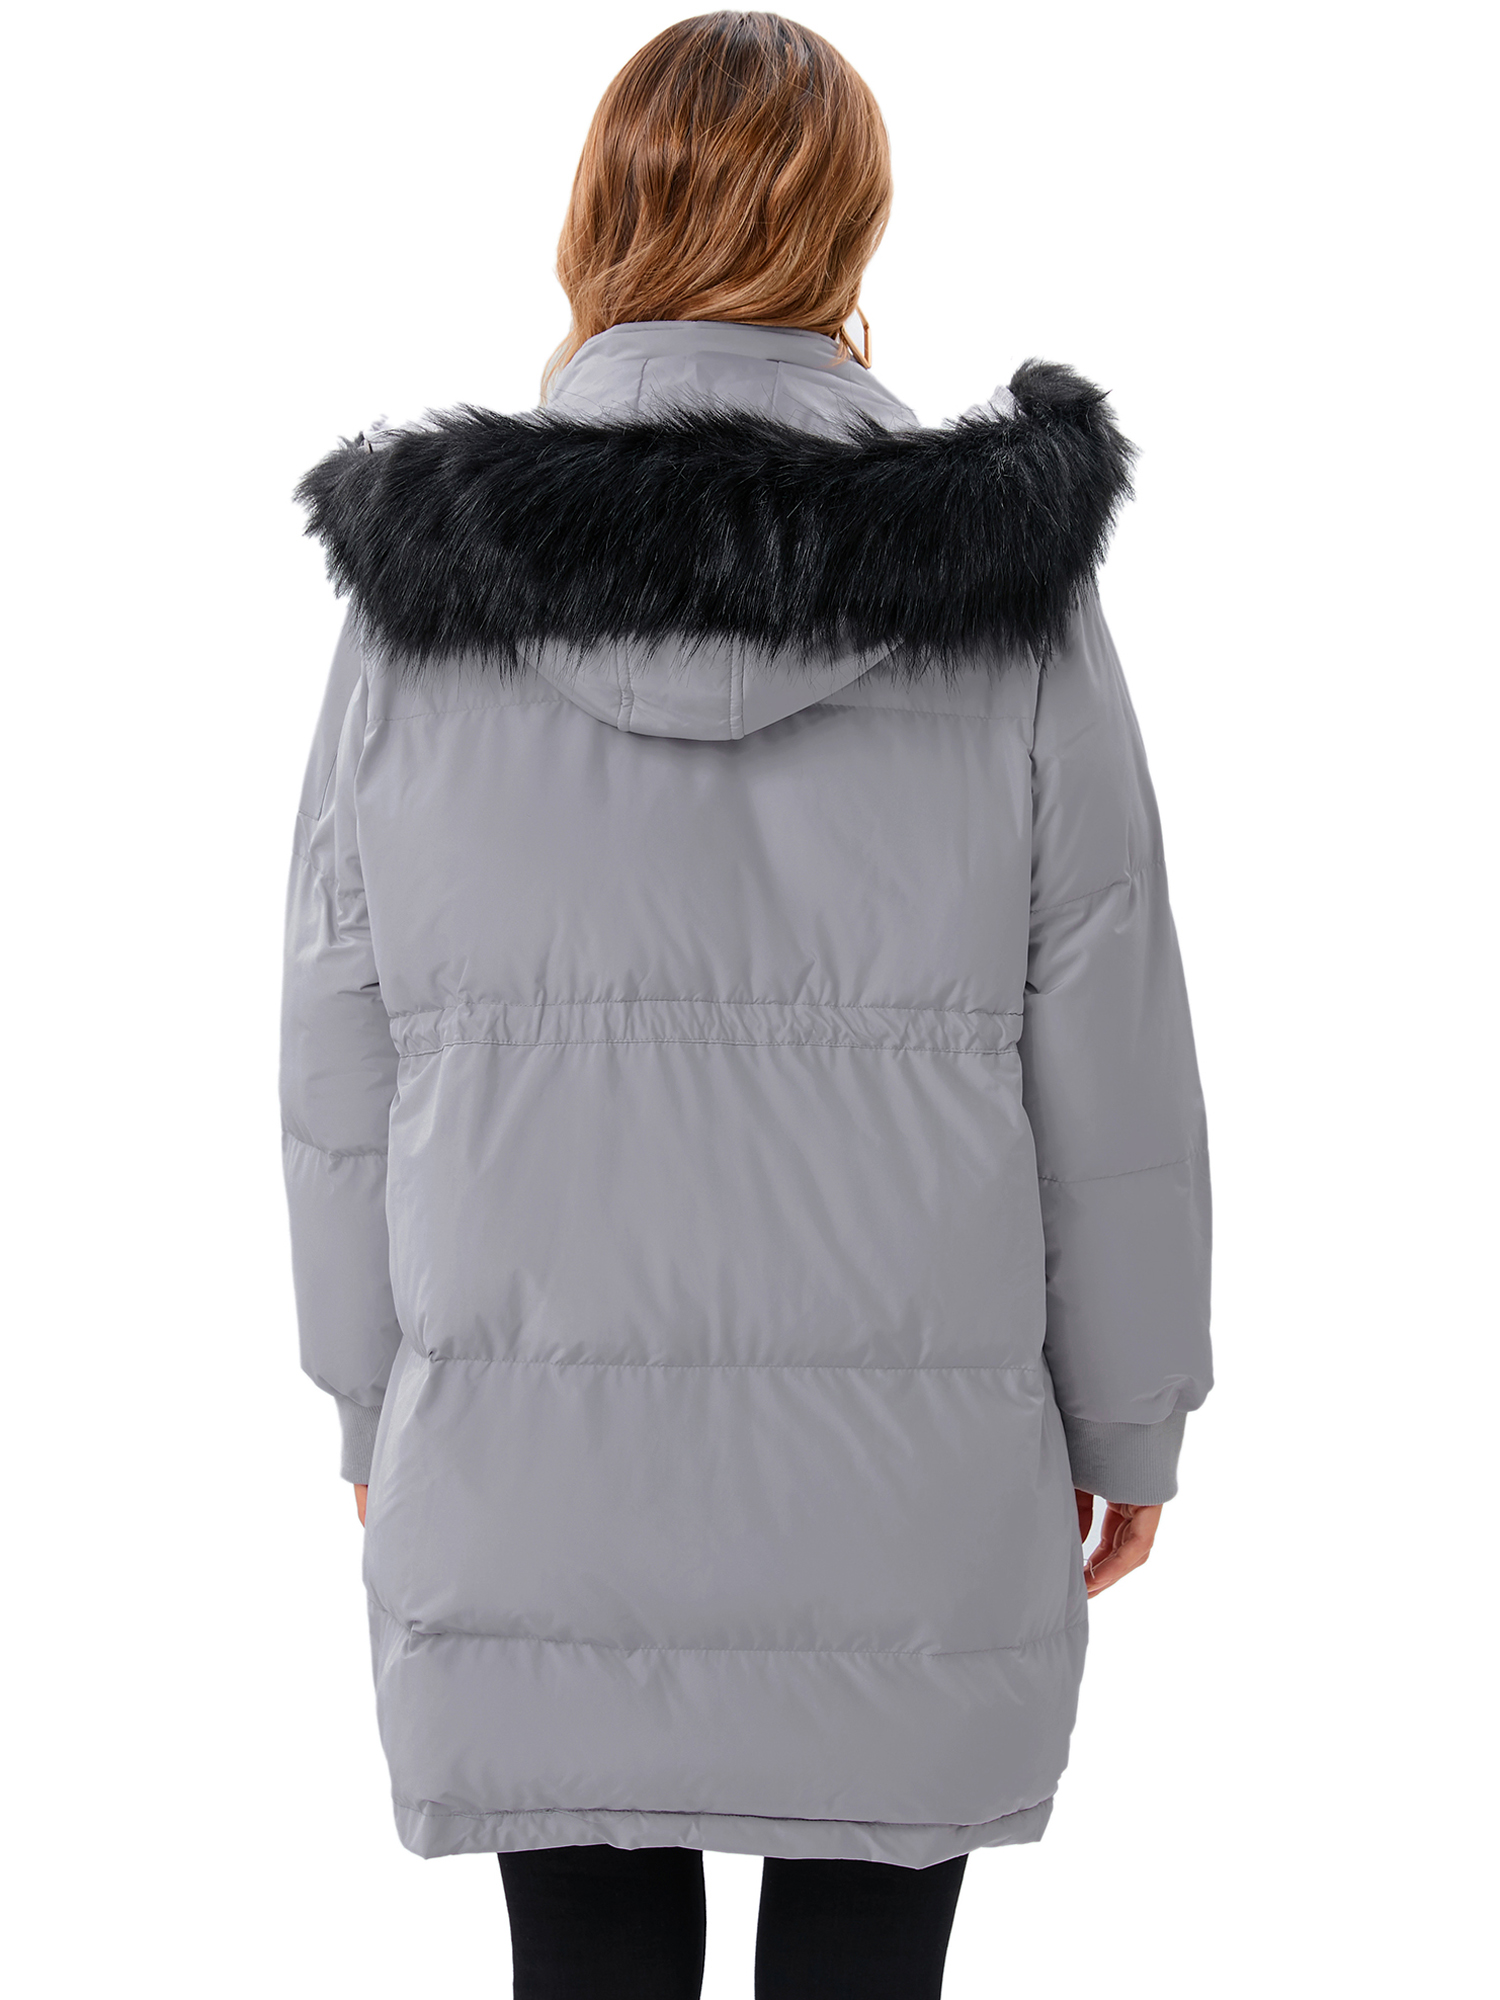 LELINTA Women's Winter Long Down Jacket Thickened Outwear Warm Puffer Fur Trim Hooded Coat Waterproof Rain Zip Parka, Black/ Camouflage - image 4 of 7